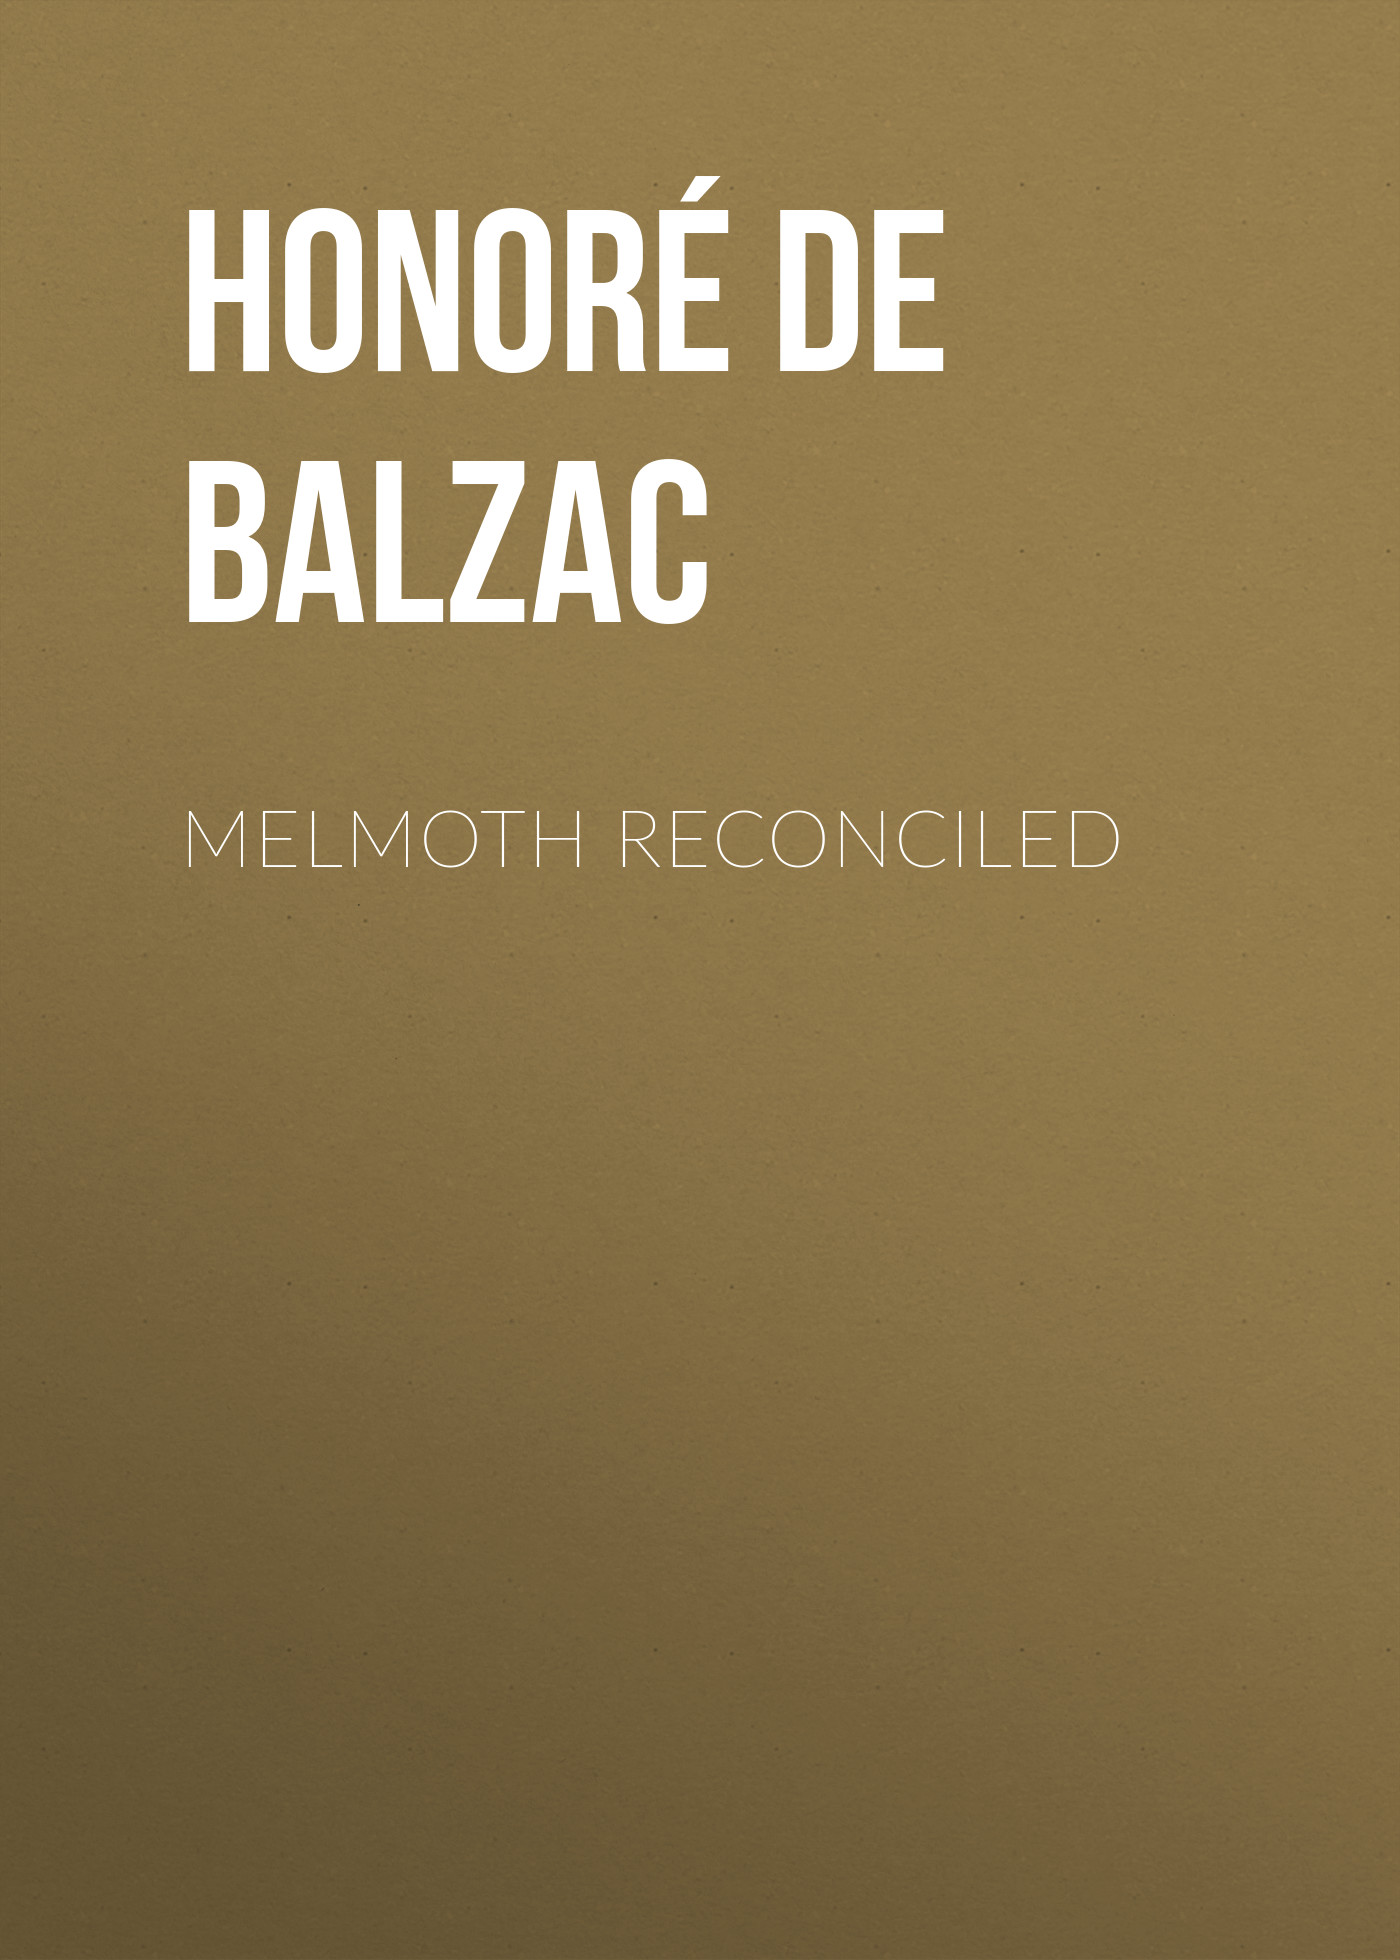 Книга Melmoth Reconciled из серии , созданная Honoré Balzac, может относится к жанру Литература 19 века, Зарубежная старинная литература, Зарубежная классика. Стоимость электронной книги Melmoth Reconciled с идентификатором 25020779 составляет 0 руб.